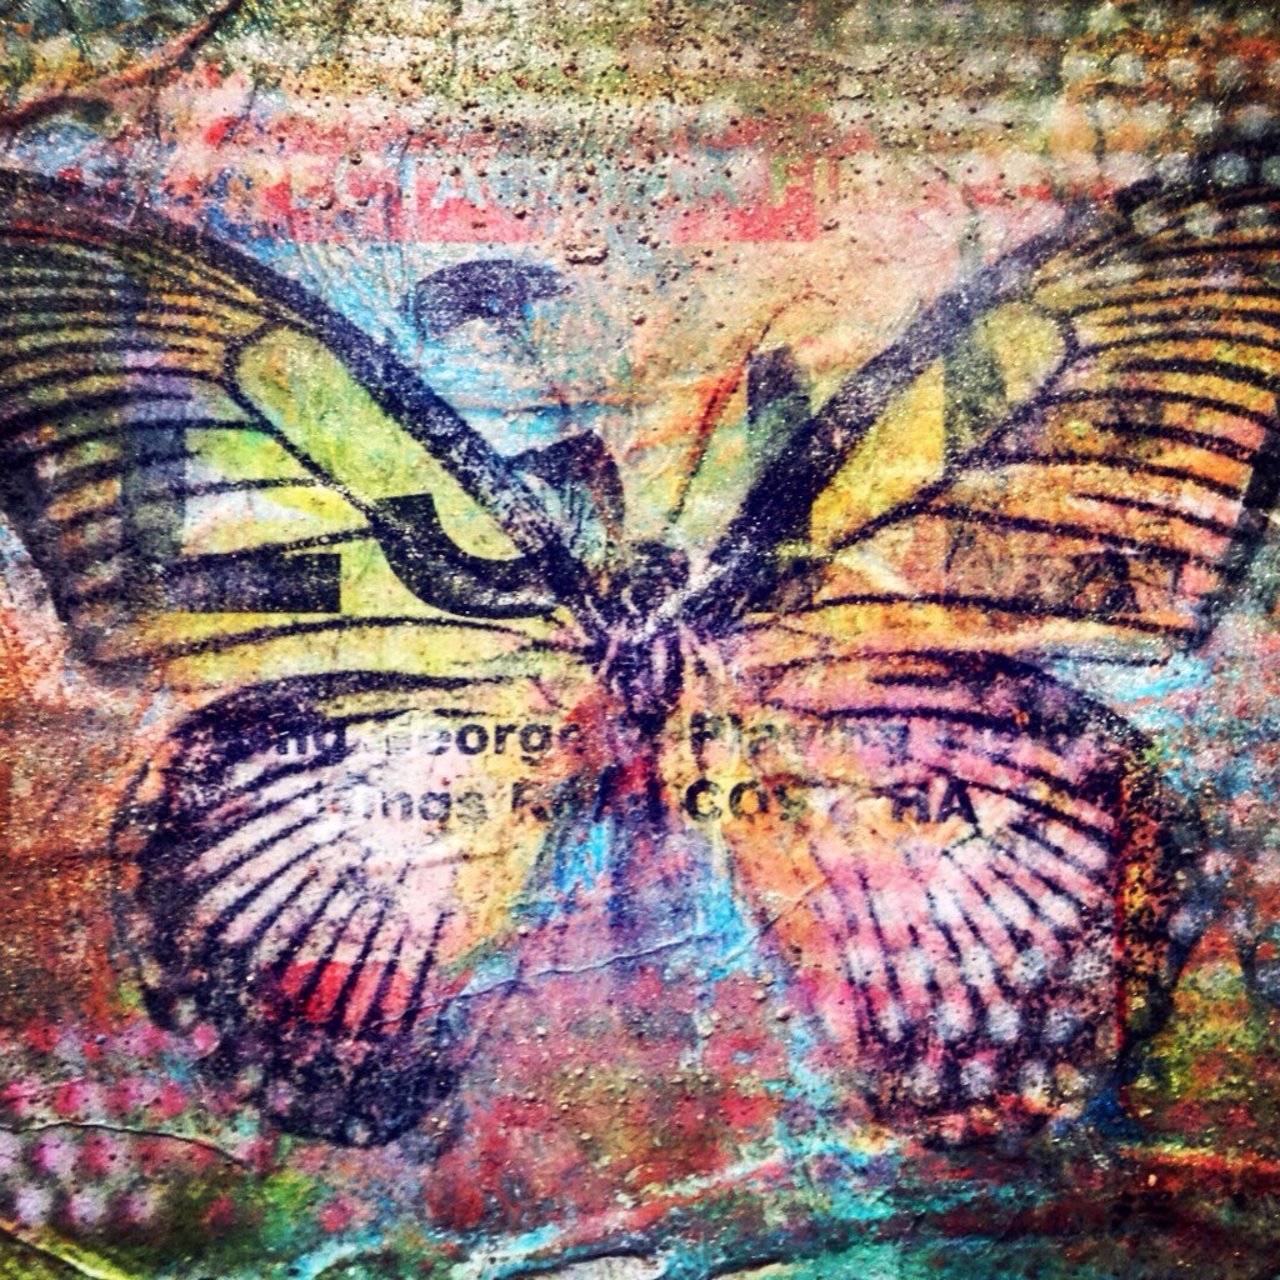 RT @MattM3Art: #Urban #Butterfly
#urbanart #urbanbutterfly #graffiti #streetart #spraypaint #stencil #mixedmedia #artist #mackman https://t.co/HVUqX2zZqC